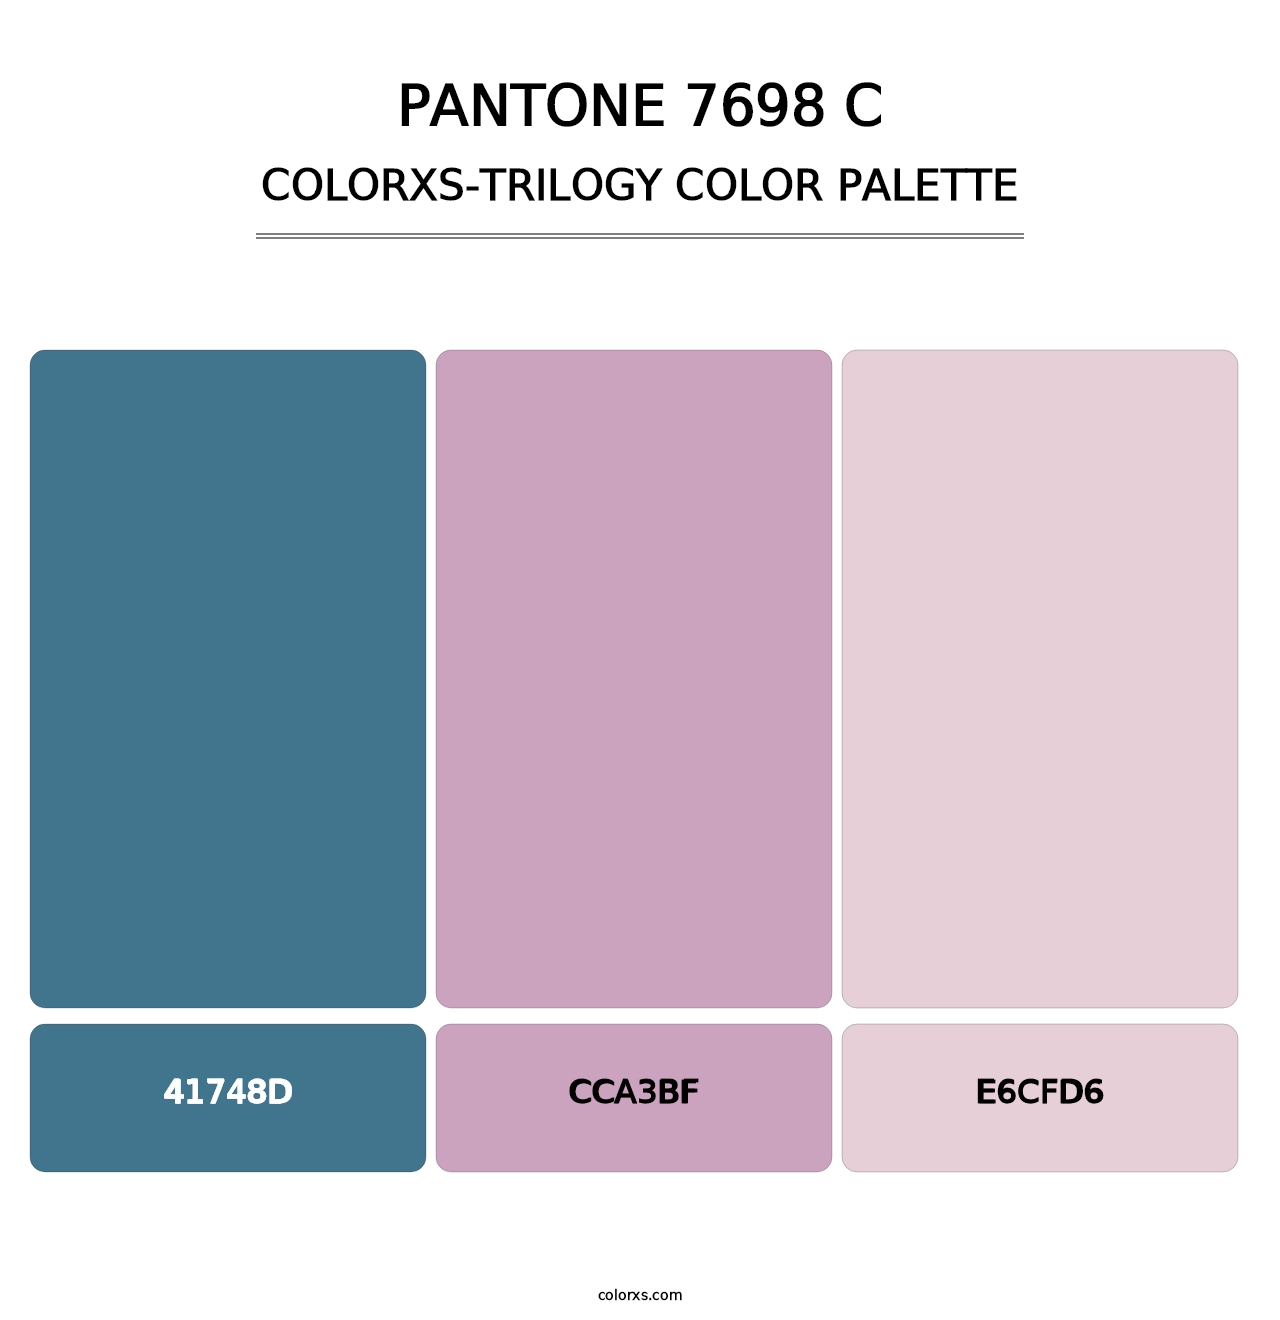 PANTONE 7698 C - Colorxs Trilogy Palette